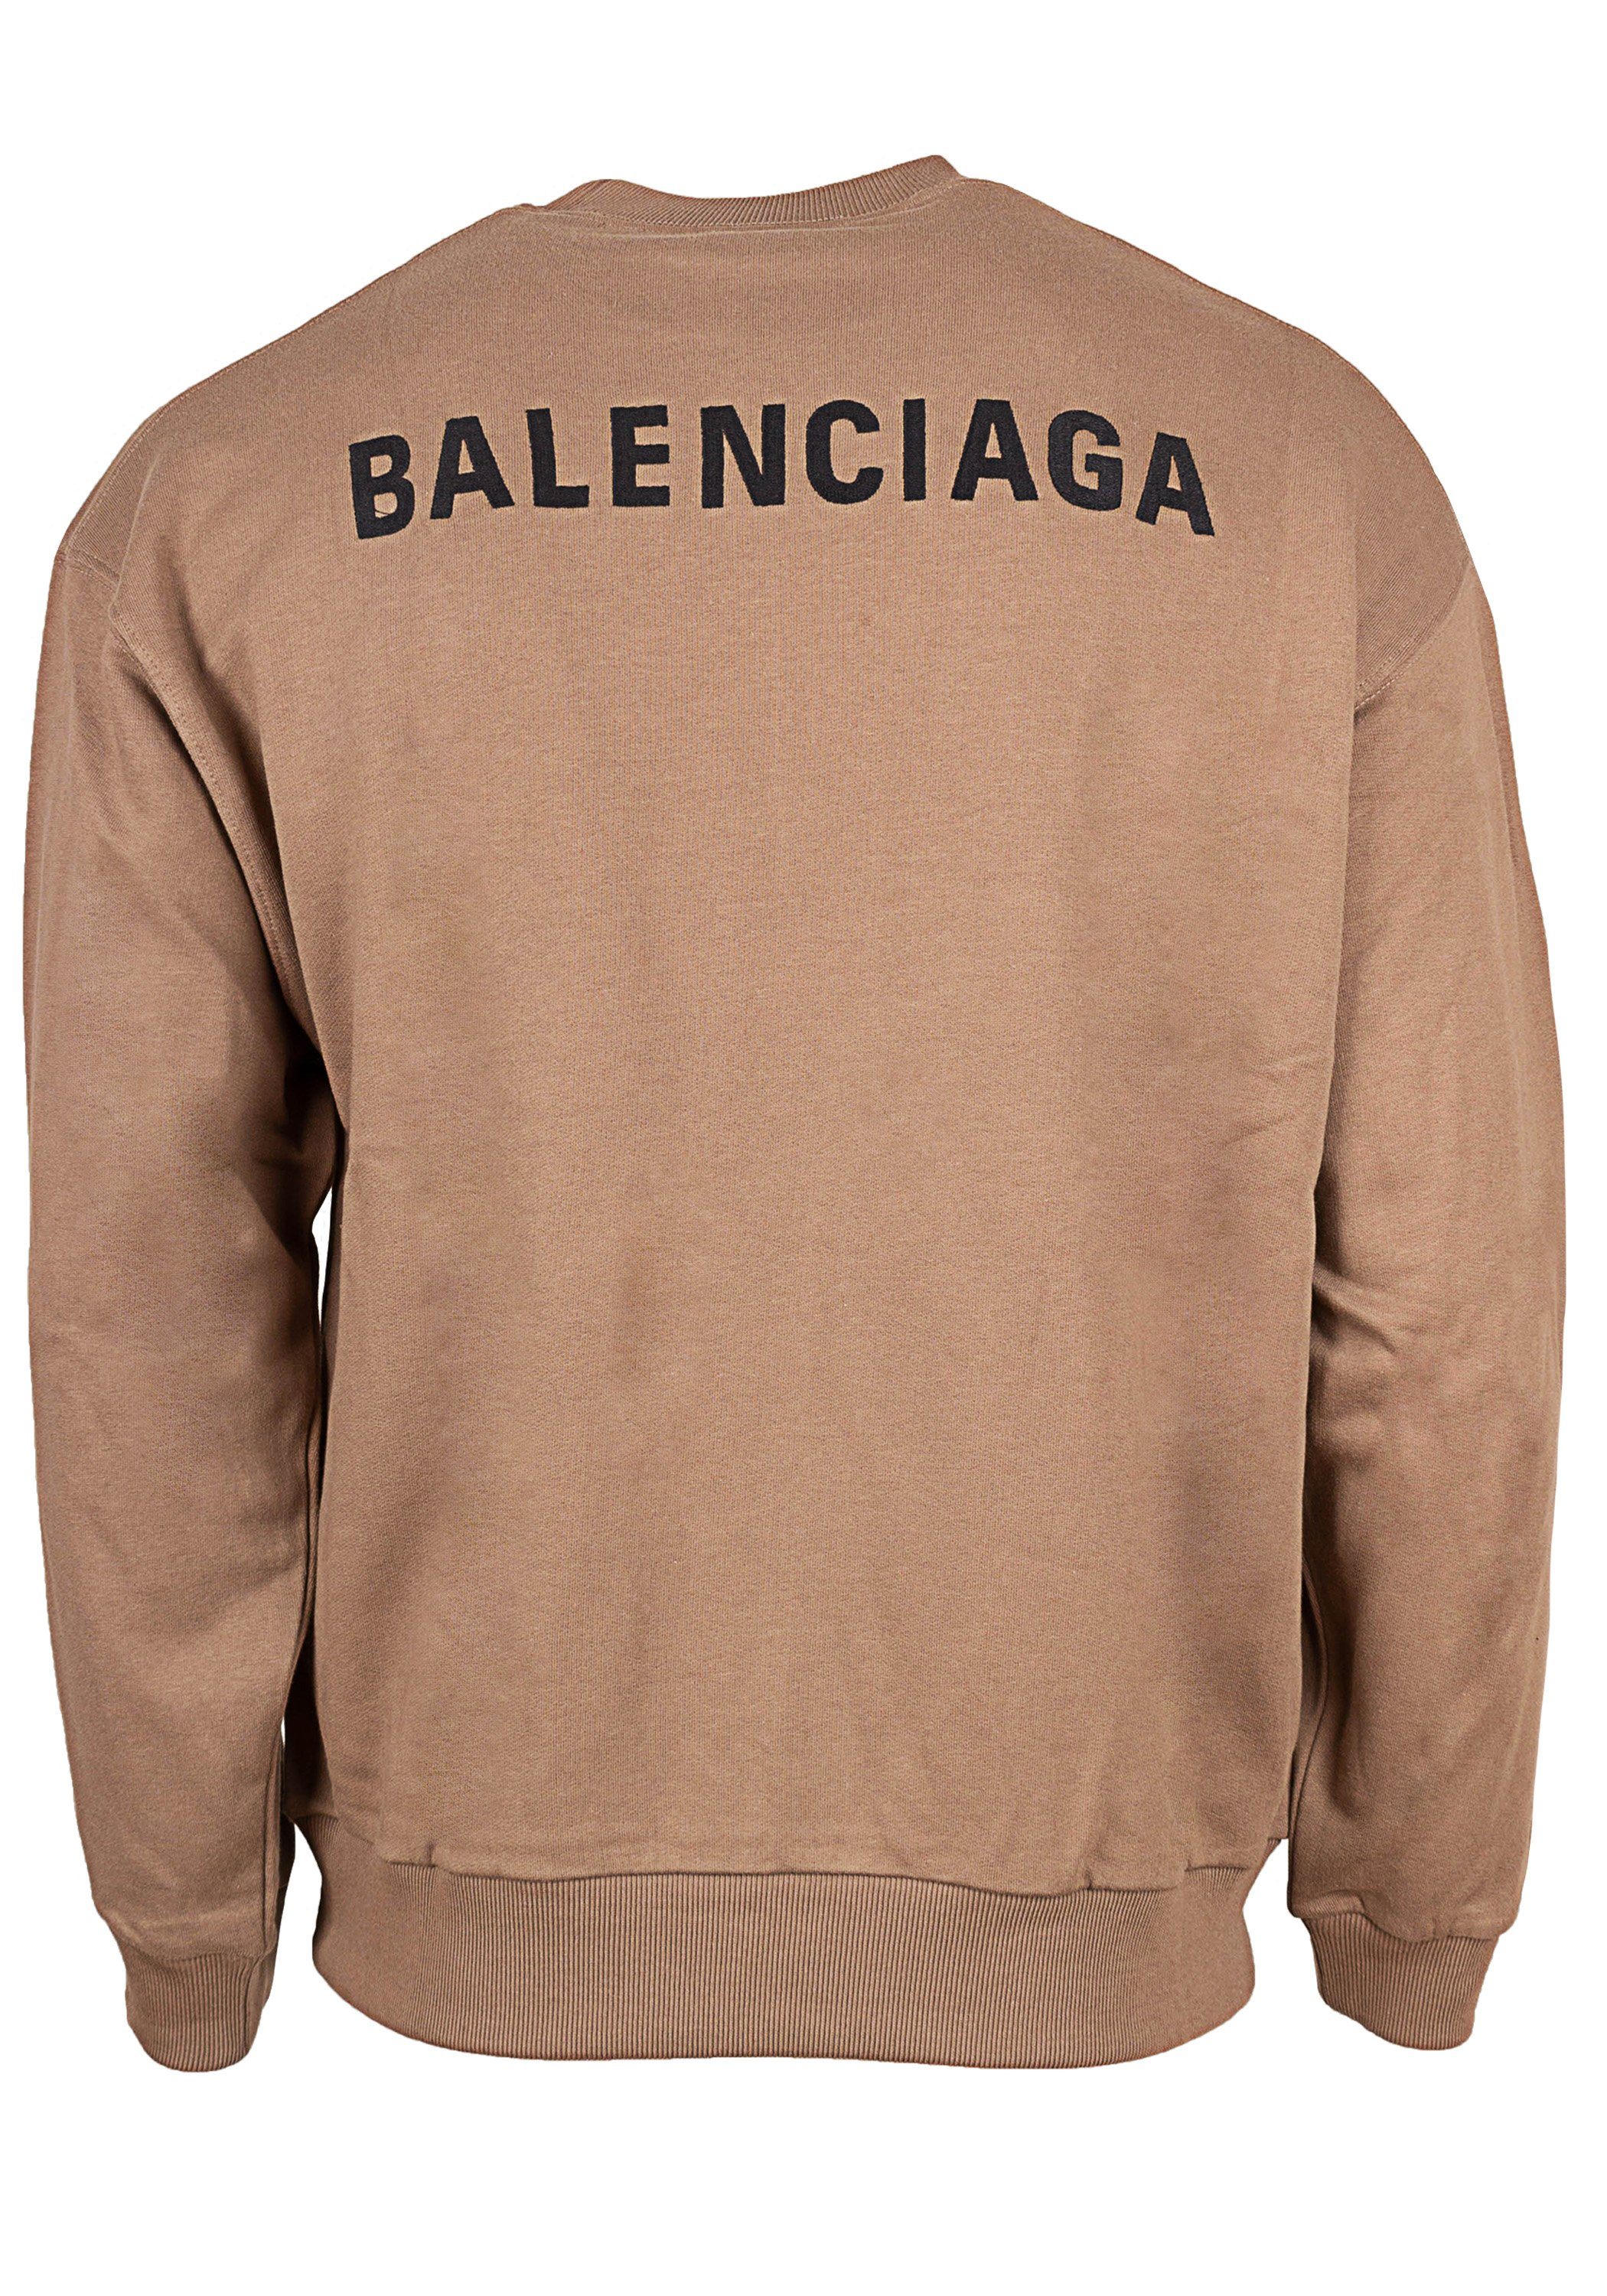 Balenciaga Sweatshirt Balenciaga Herren Sweatshirt 697869 TMVF5 Slimfit  Sweatshirt